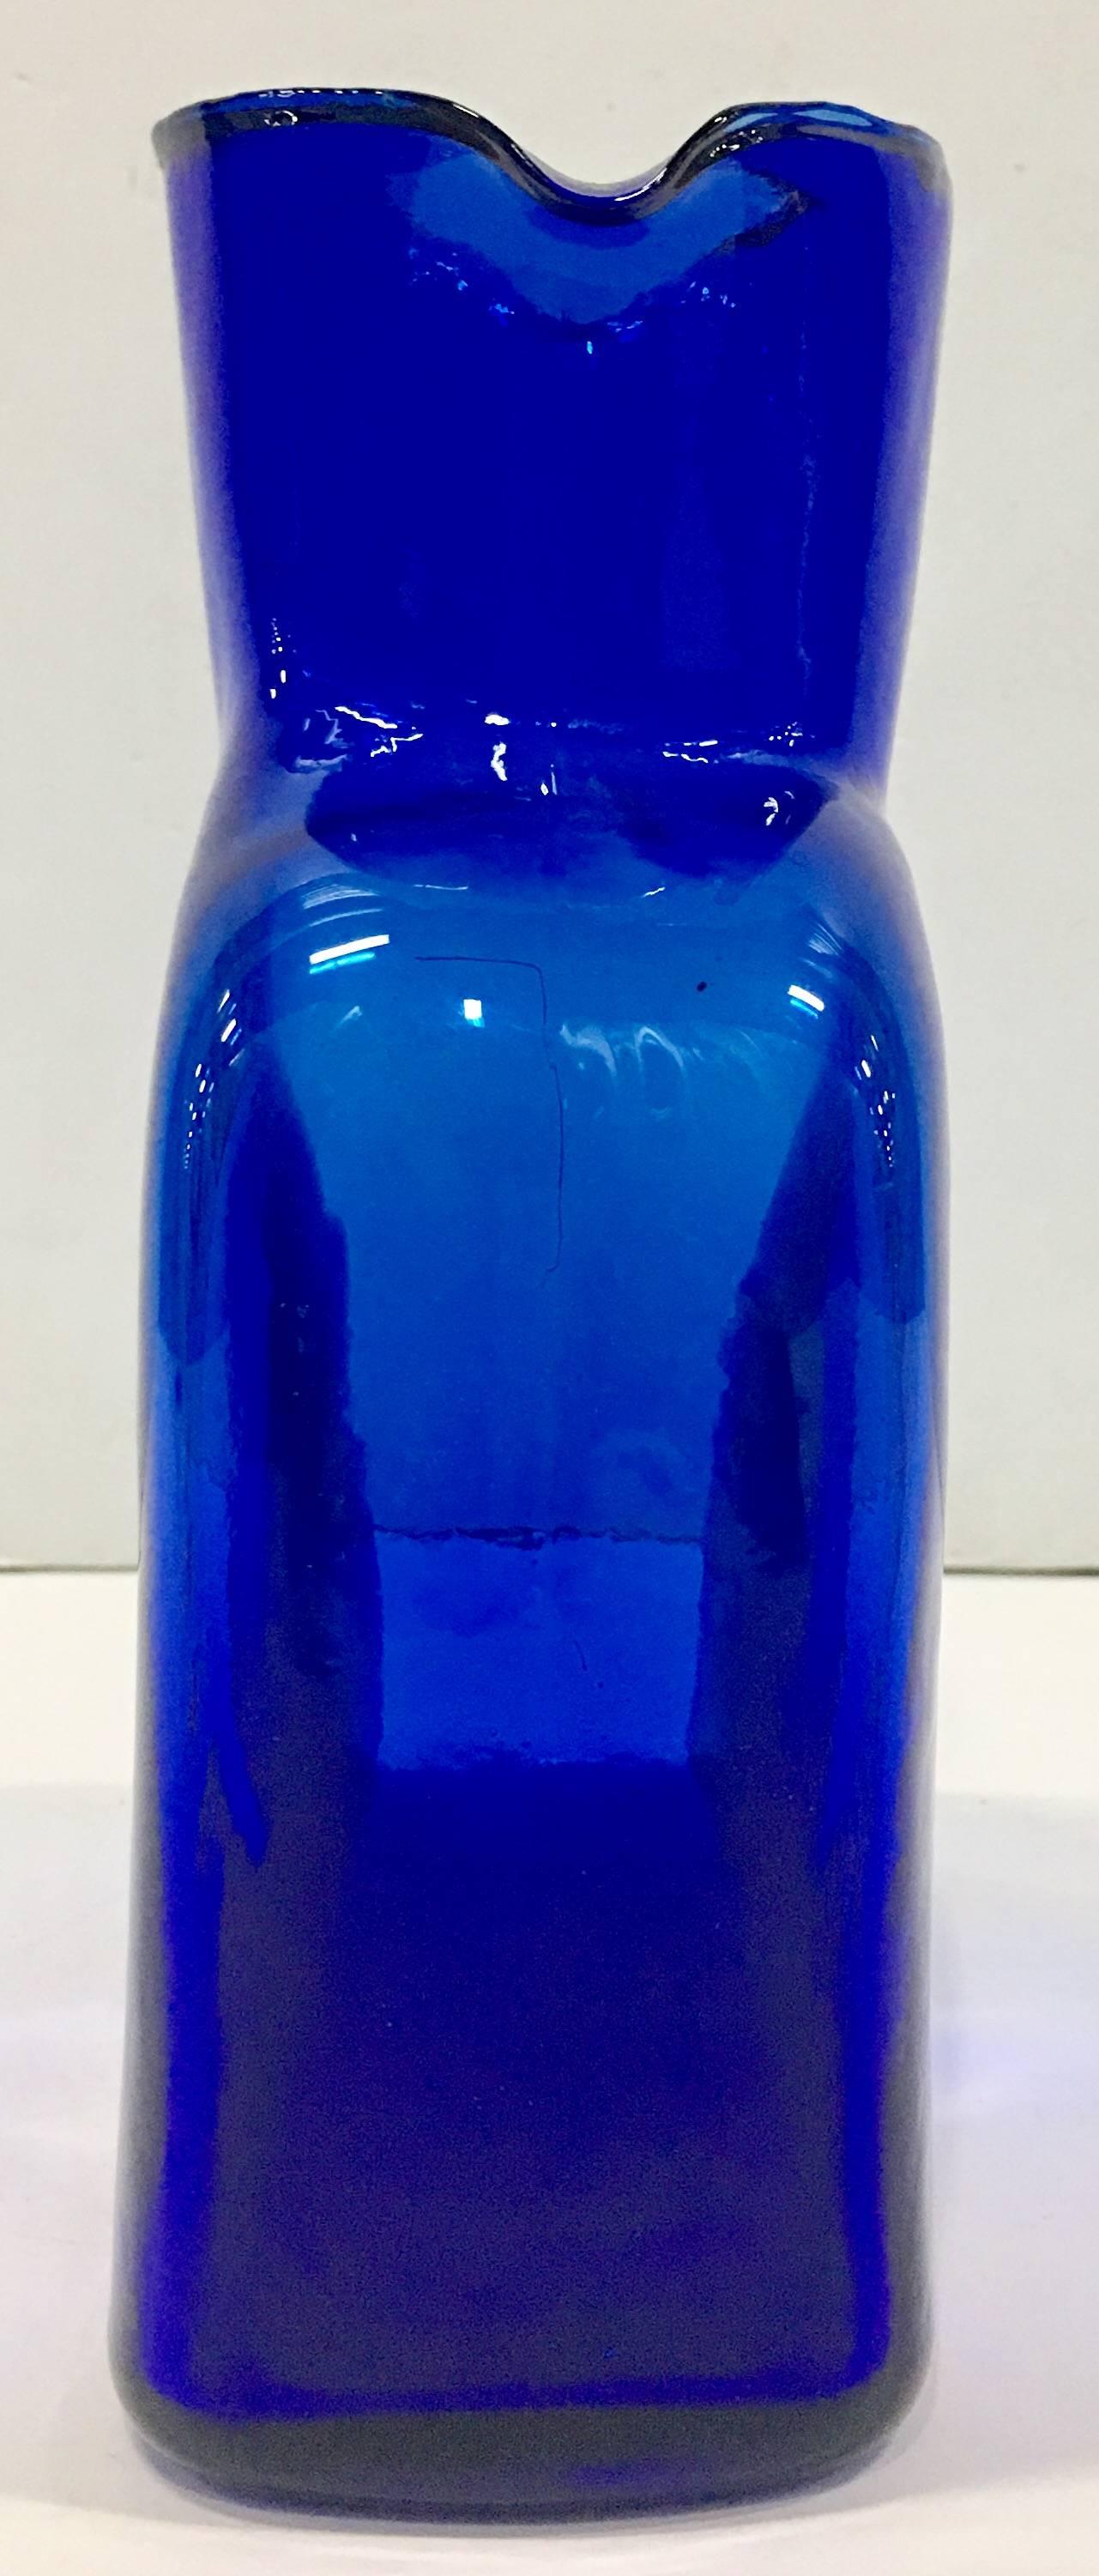 blenko blue glass vase